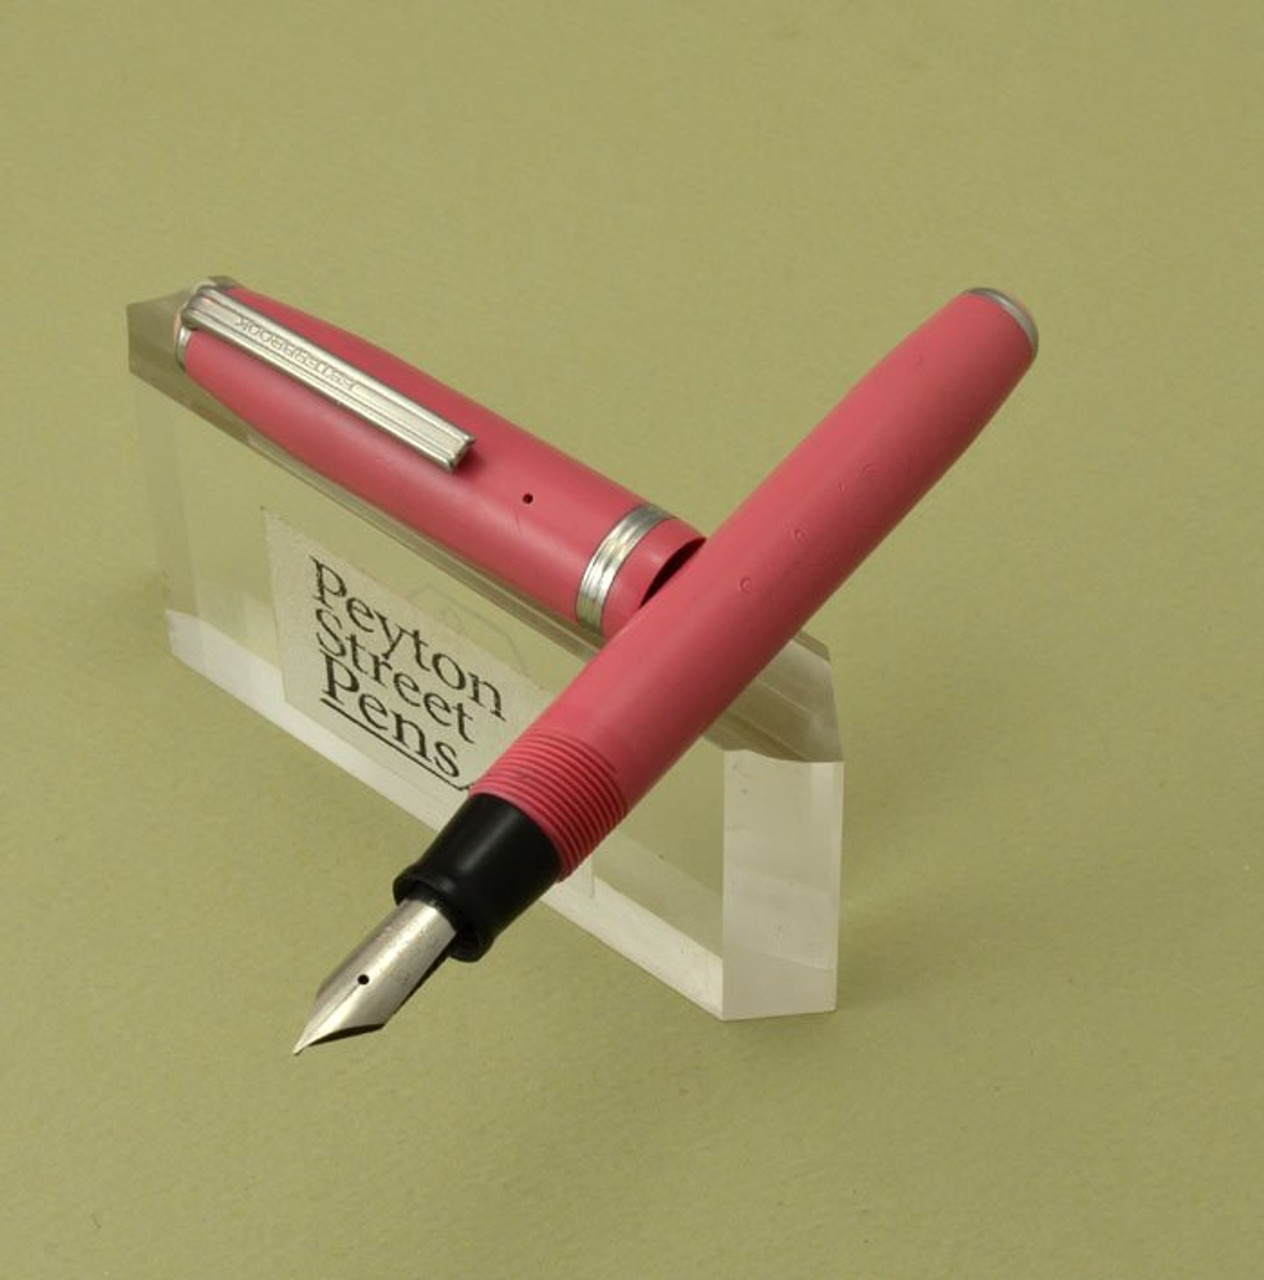 Esterbrook Pastels Fountain Pen (2nd Gen.) - Pink, 1555 Firm Medium (Very Nice, Restored)